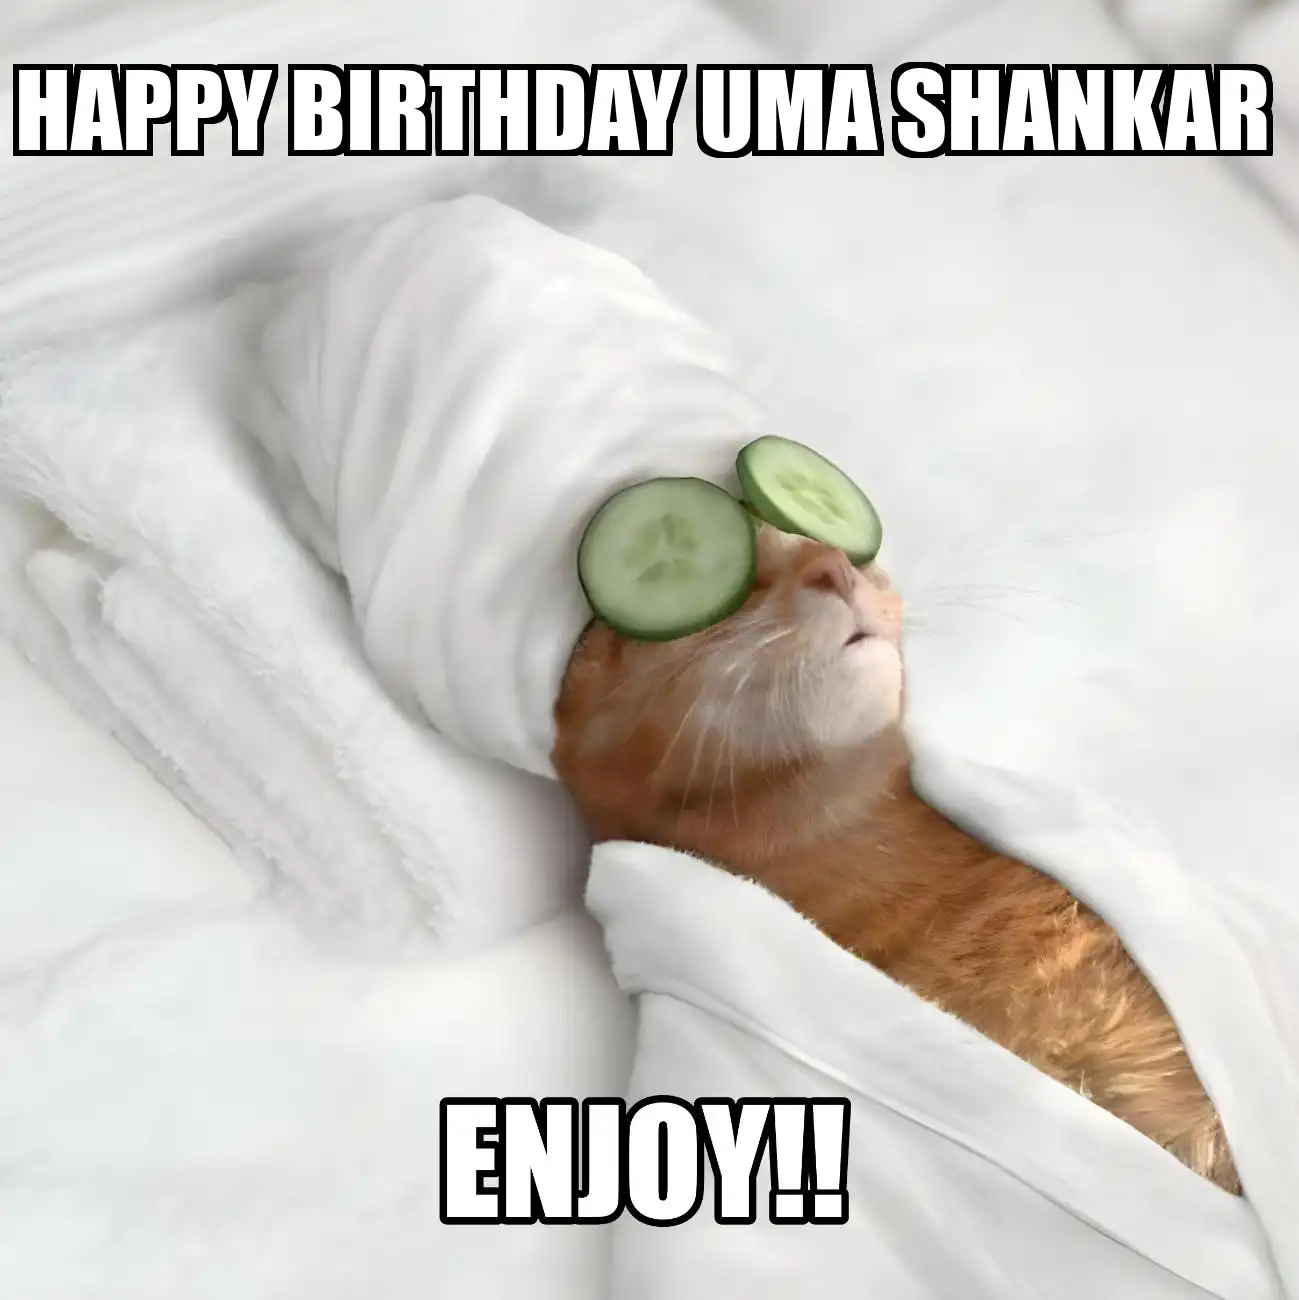 Happy Birthday Uma shankar Enjoy Cat Meme